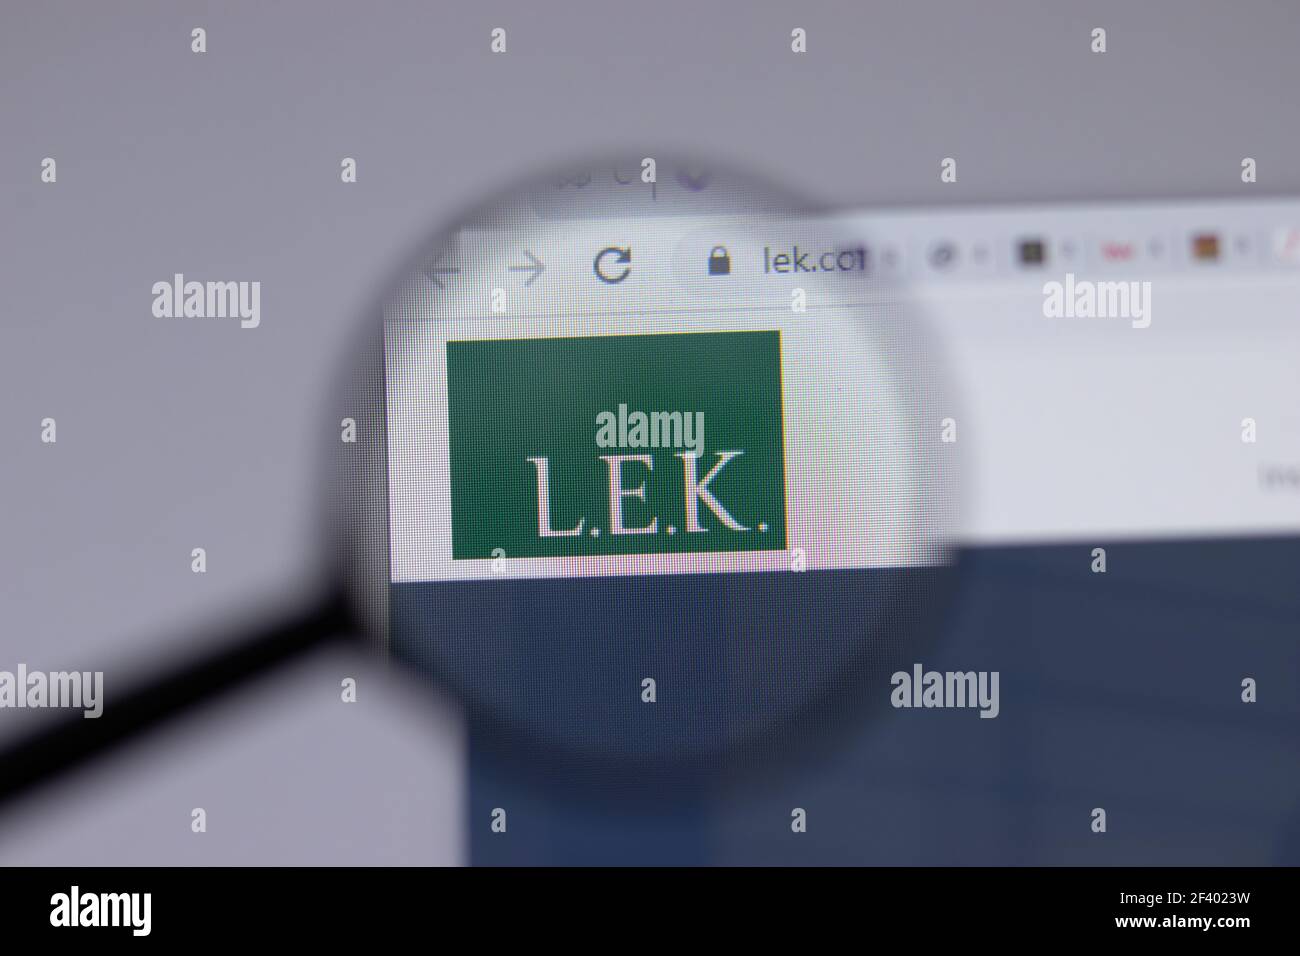 New York, États-Unis - 18 mars 2021 : L.E.K. Icône du logo de la société LEK Consulting sur le site Web, Editorial Banque D'Images